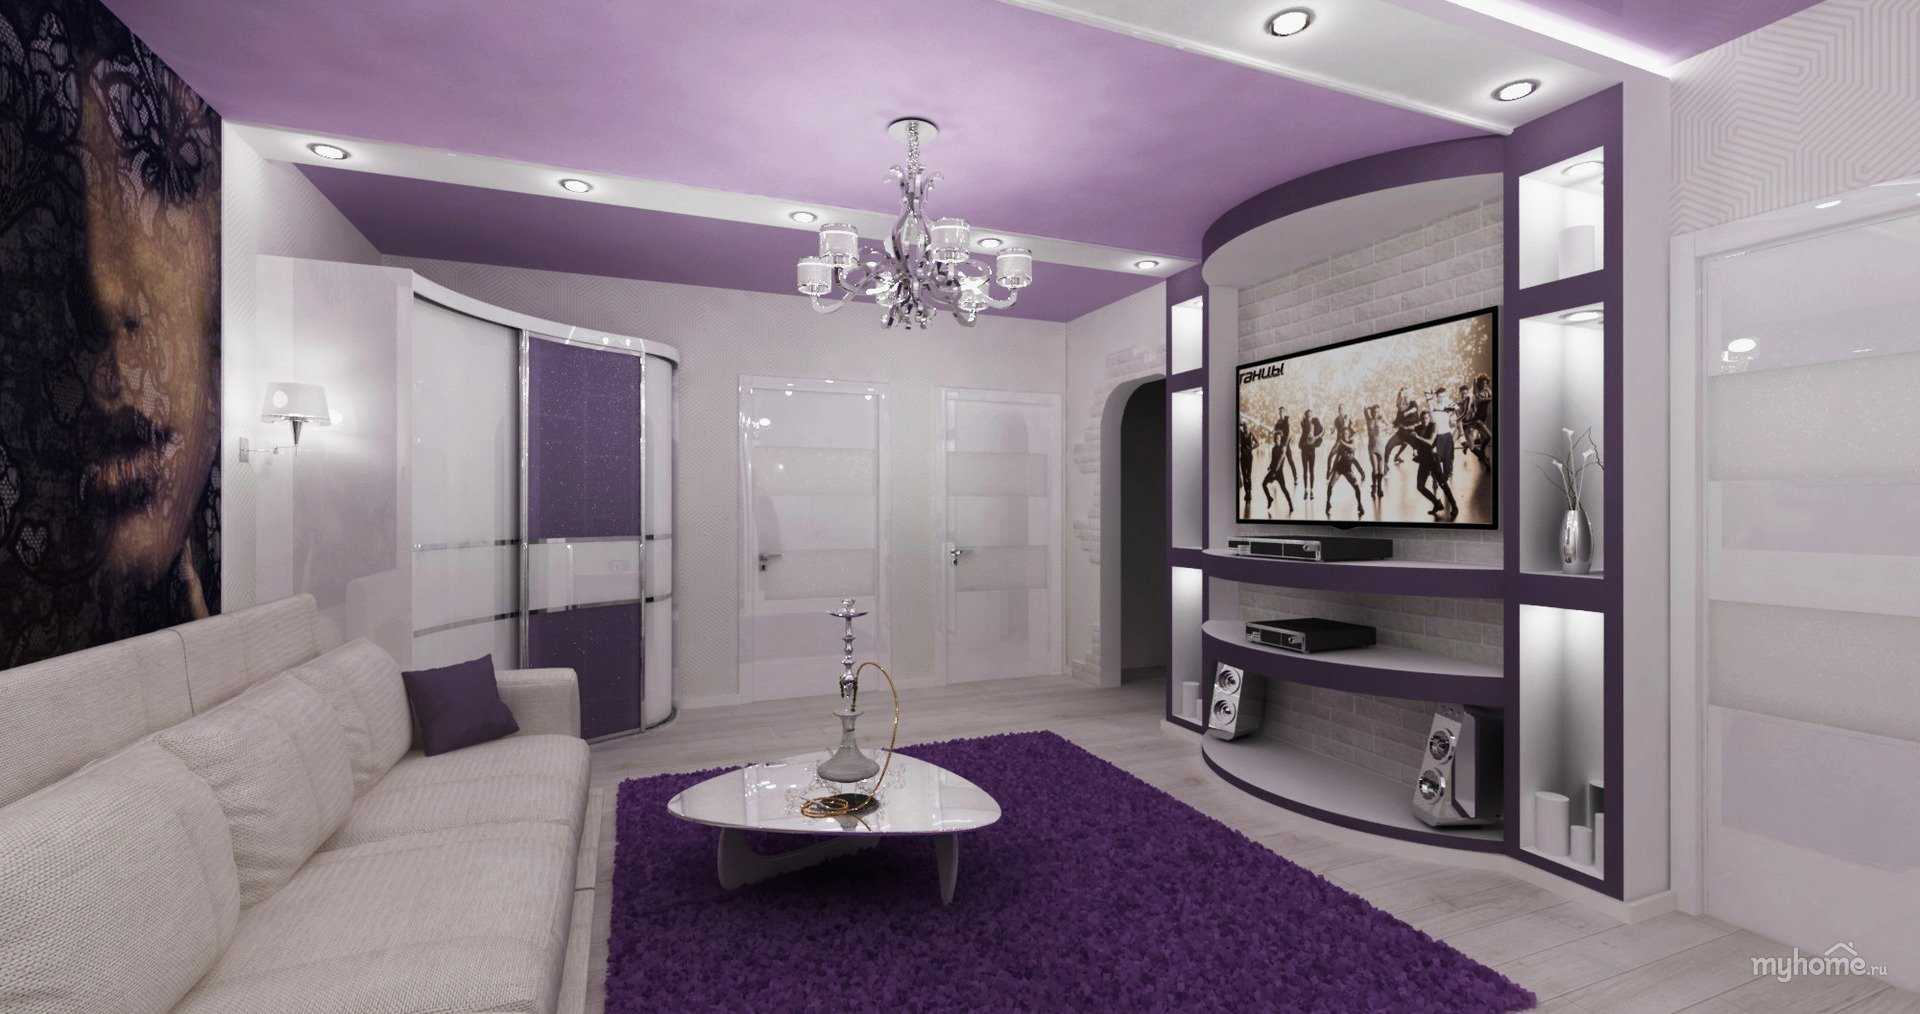 Фиолетовый диван в интерьере: гостиной, прихожей, кухни, спальни и детской комнаты